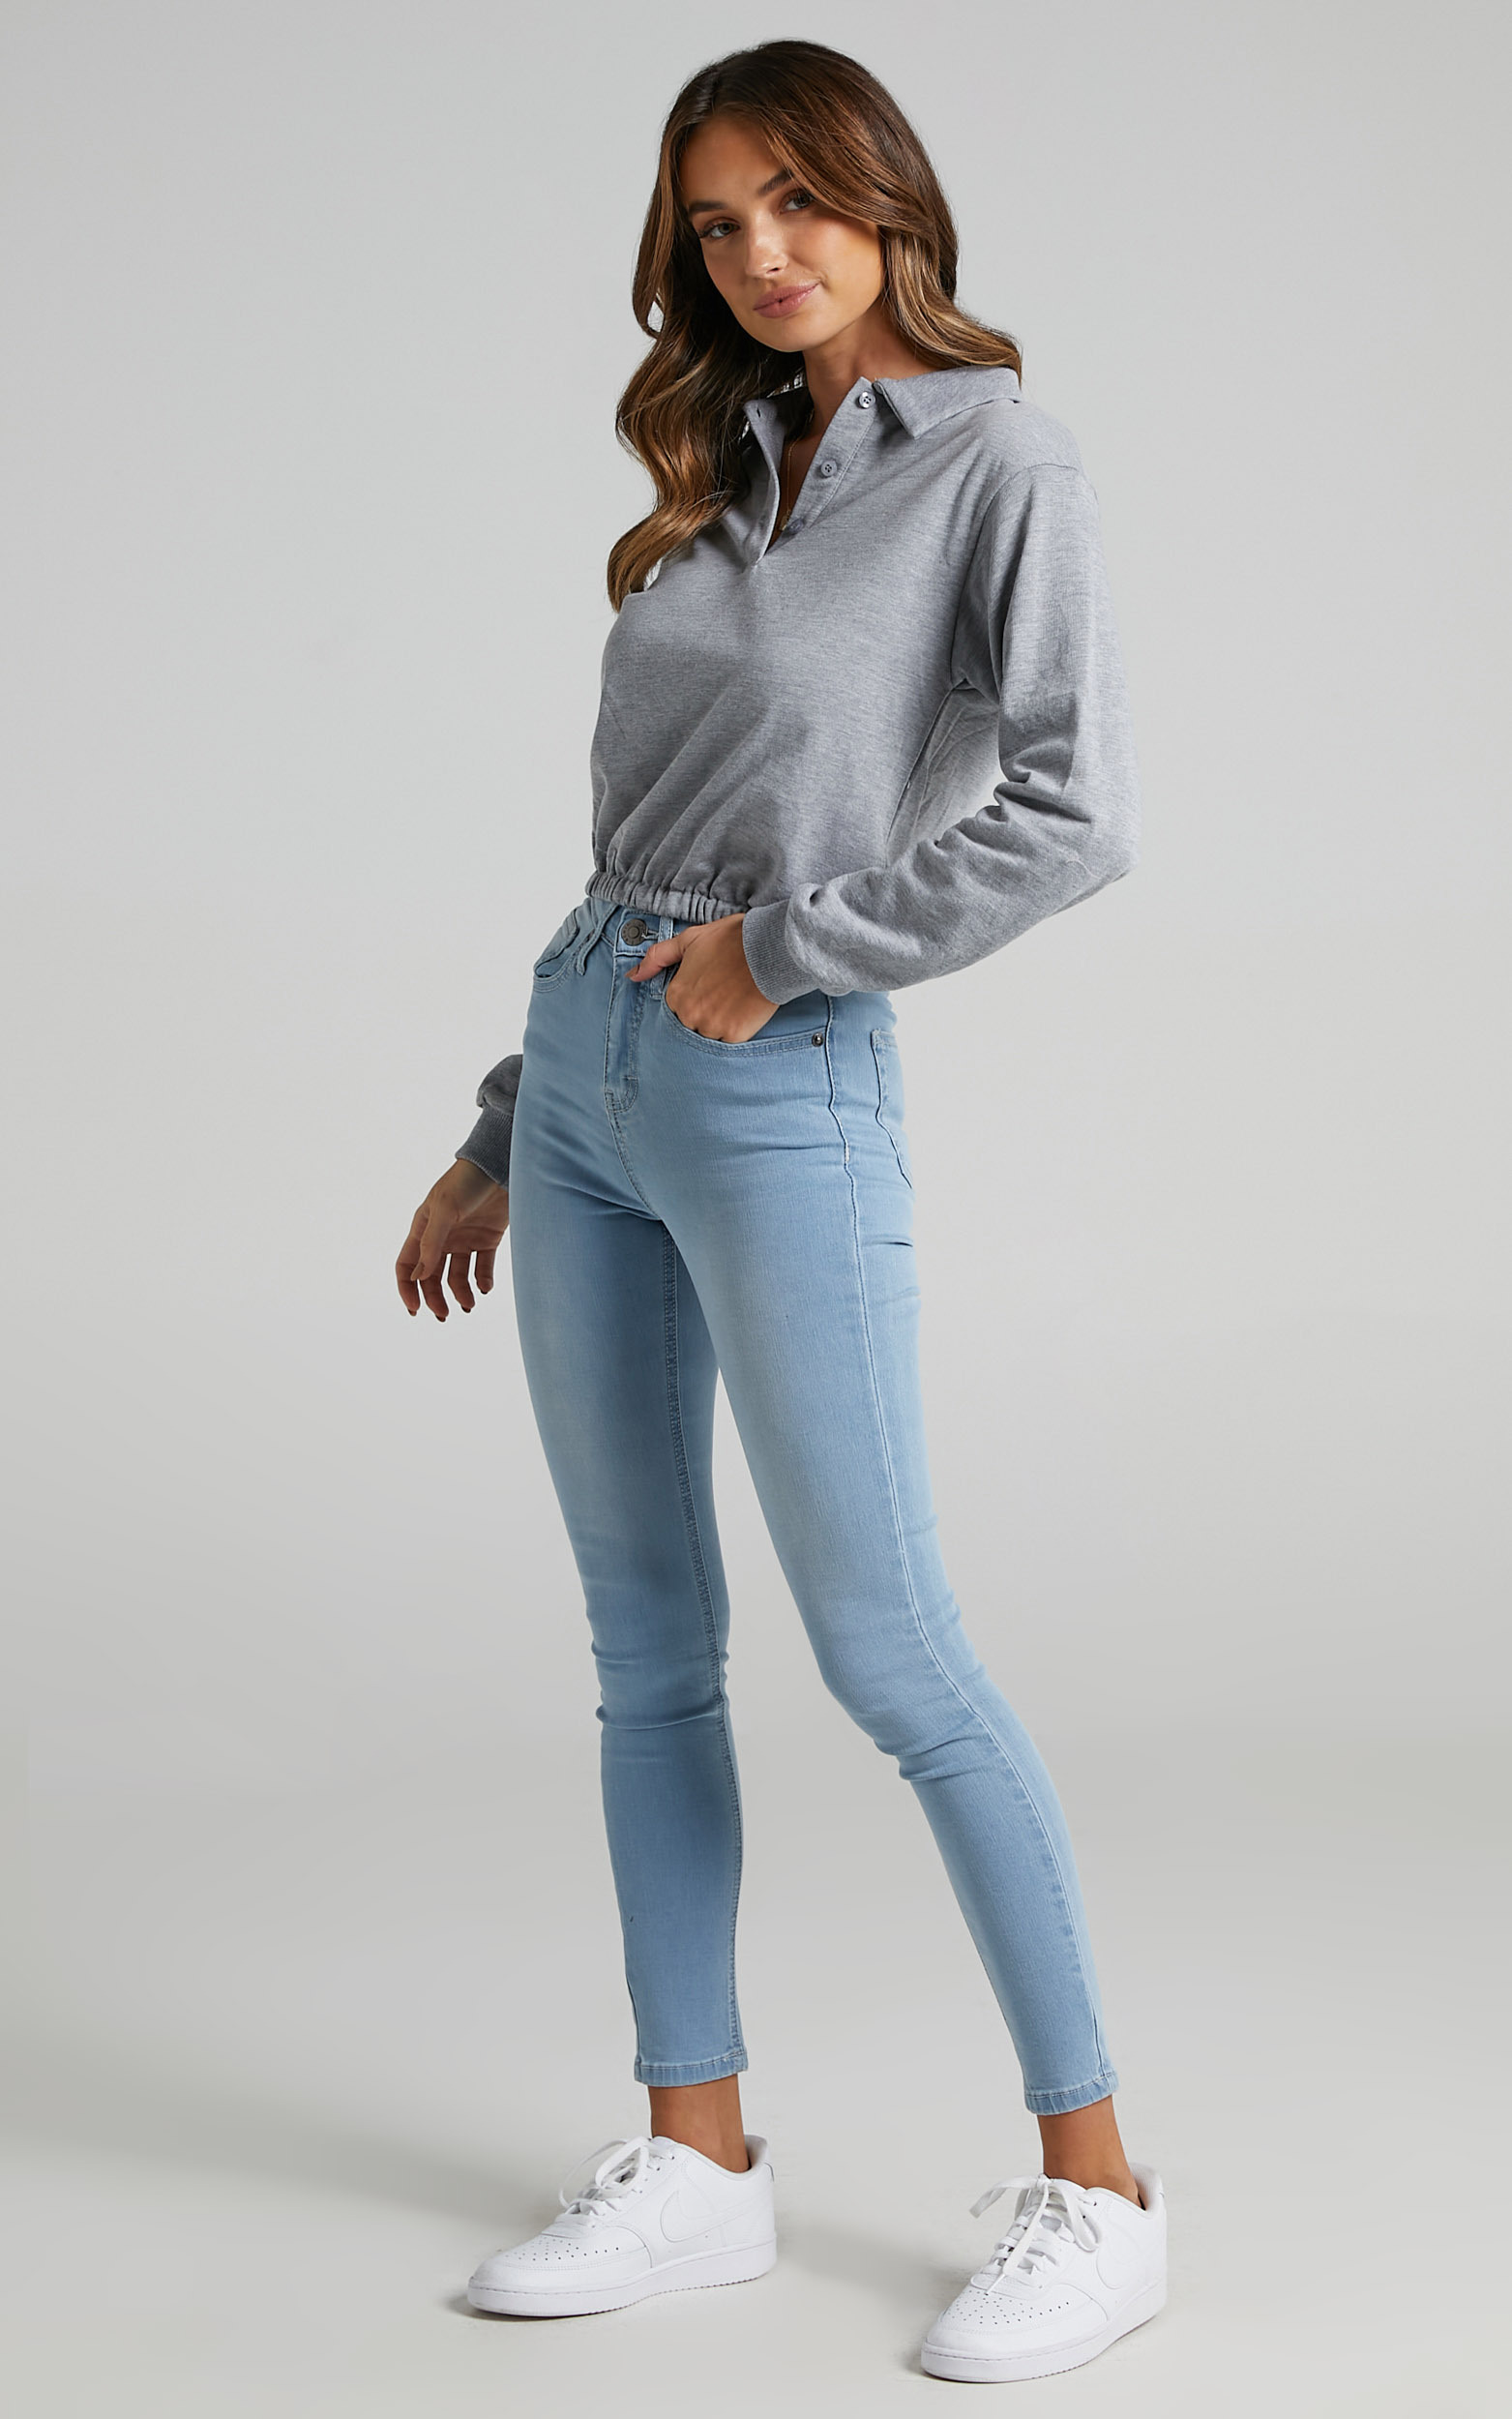 Christina Skinny Jeans In Light Wash Denim | Showpo